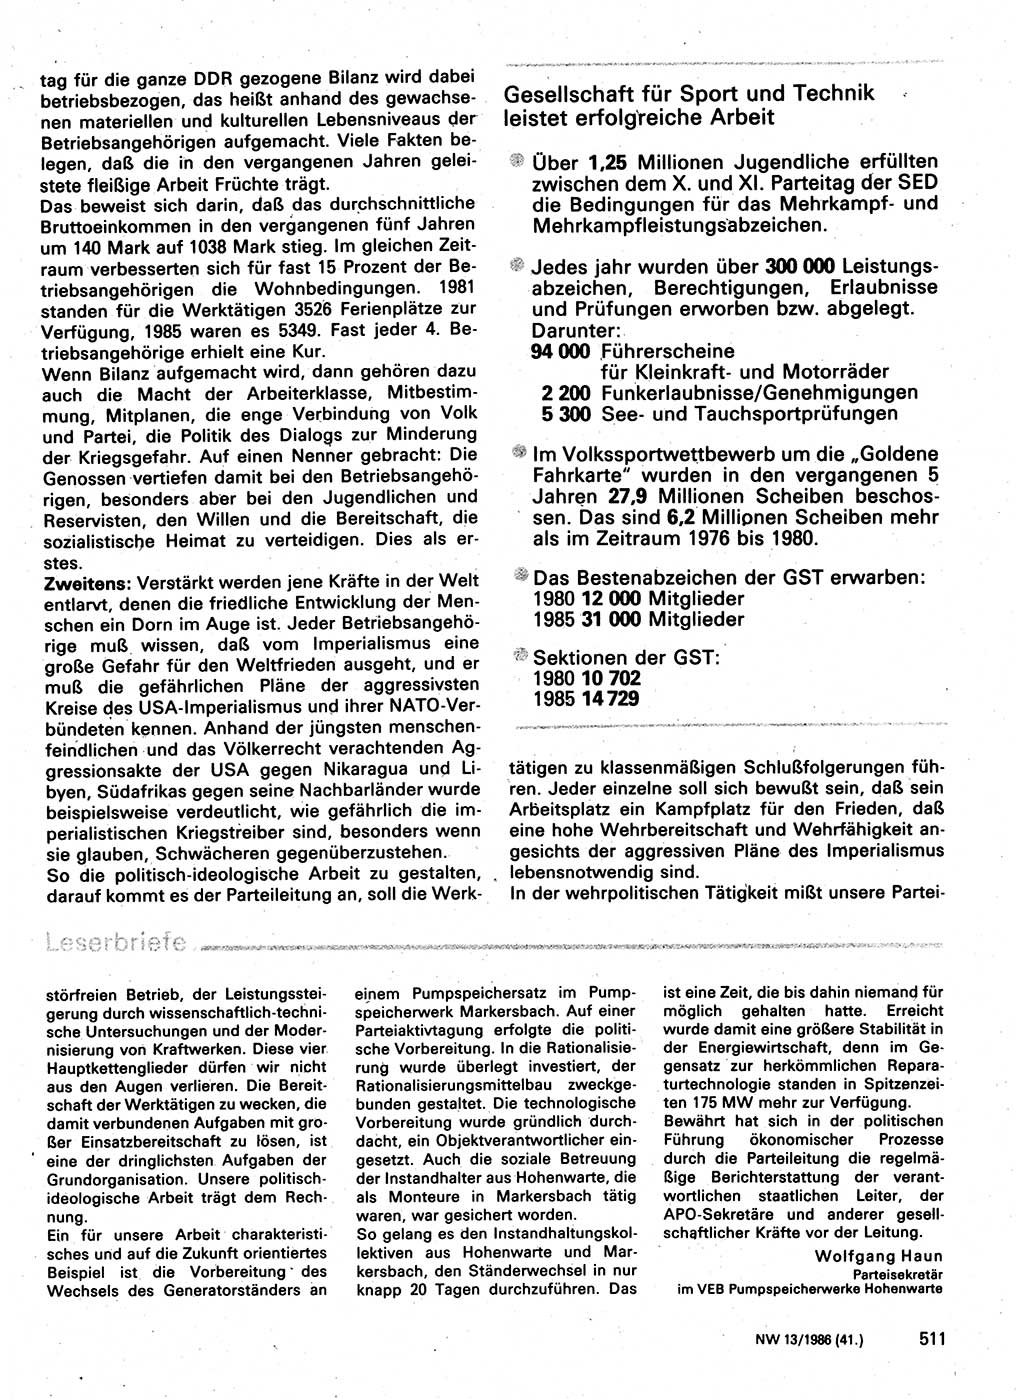 Neuer Weg (NW), Organ des Zentralkomitees (ZK) der SED (Sozialistische Einheitspartei Deutschlands) für Fragen des Parteilebens, 41. Jahrgang [Deutsche Demokratische Republik (DDR)] 1986, Seite 511 (NW ZK SED DDR 1986, S. 511)